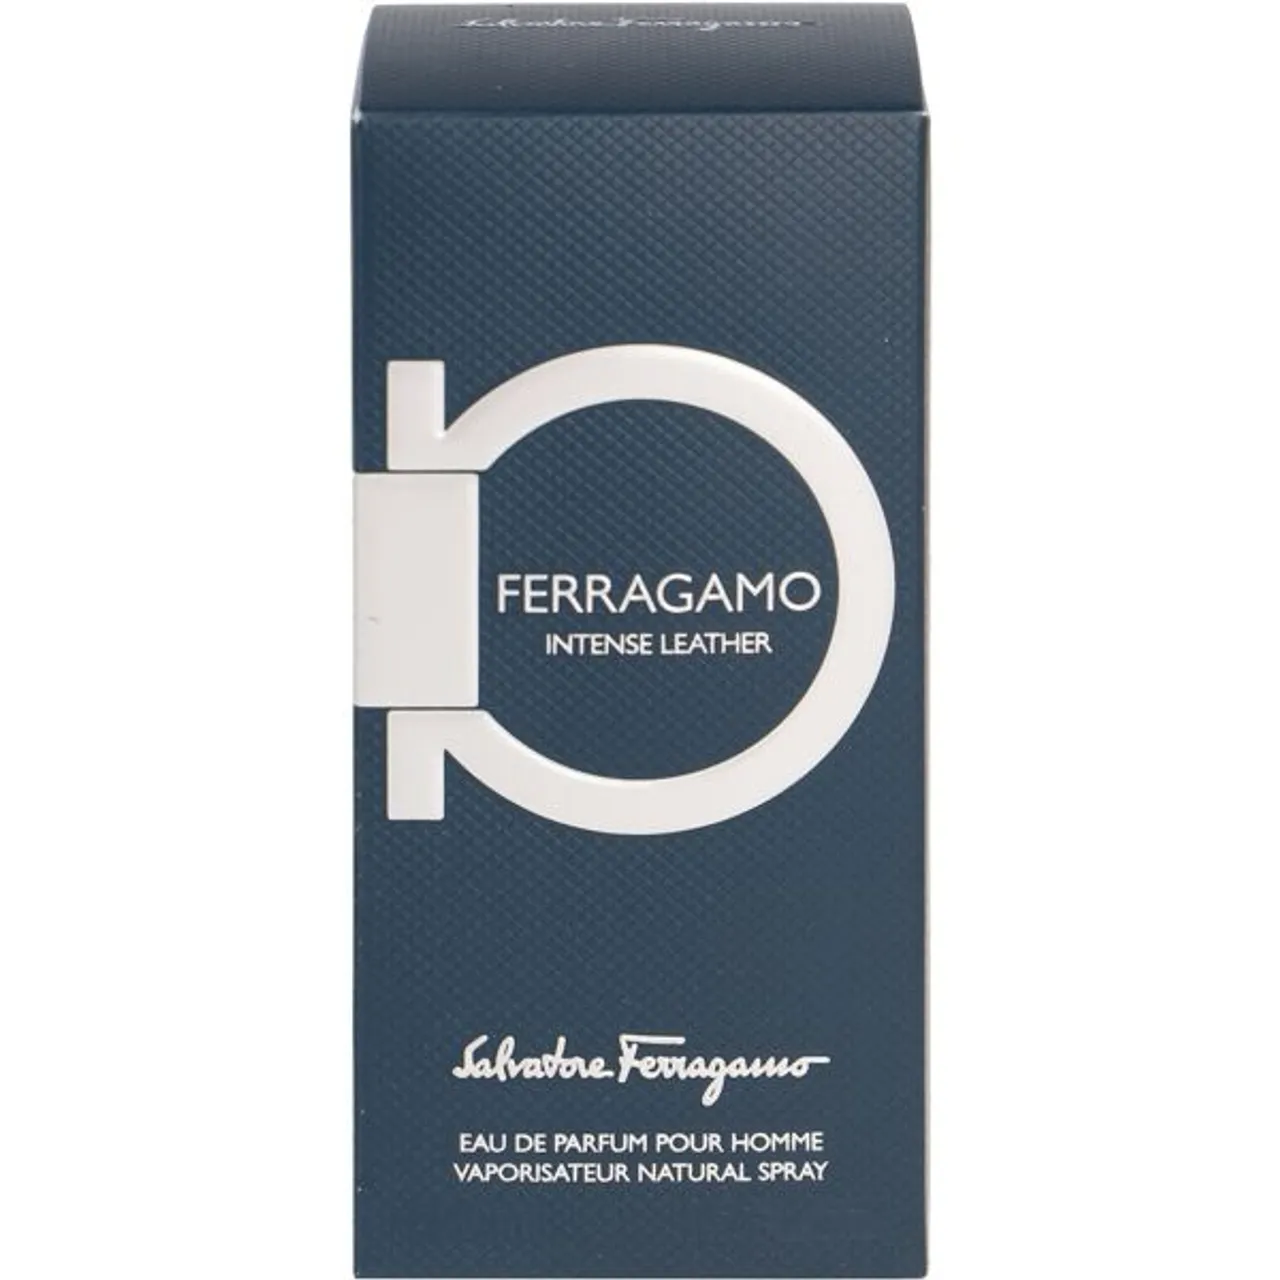 Eau de Parfum SALVATORE FERRAGAMO "Intense Leather" Parfüms Gr. 50 ml, blau Damen Eau de Parfum